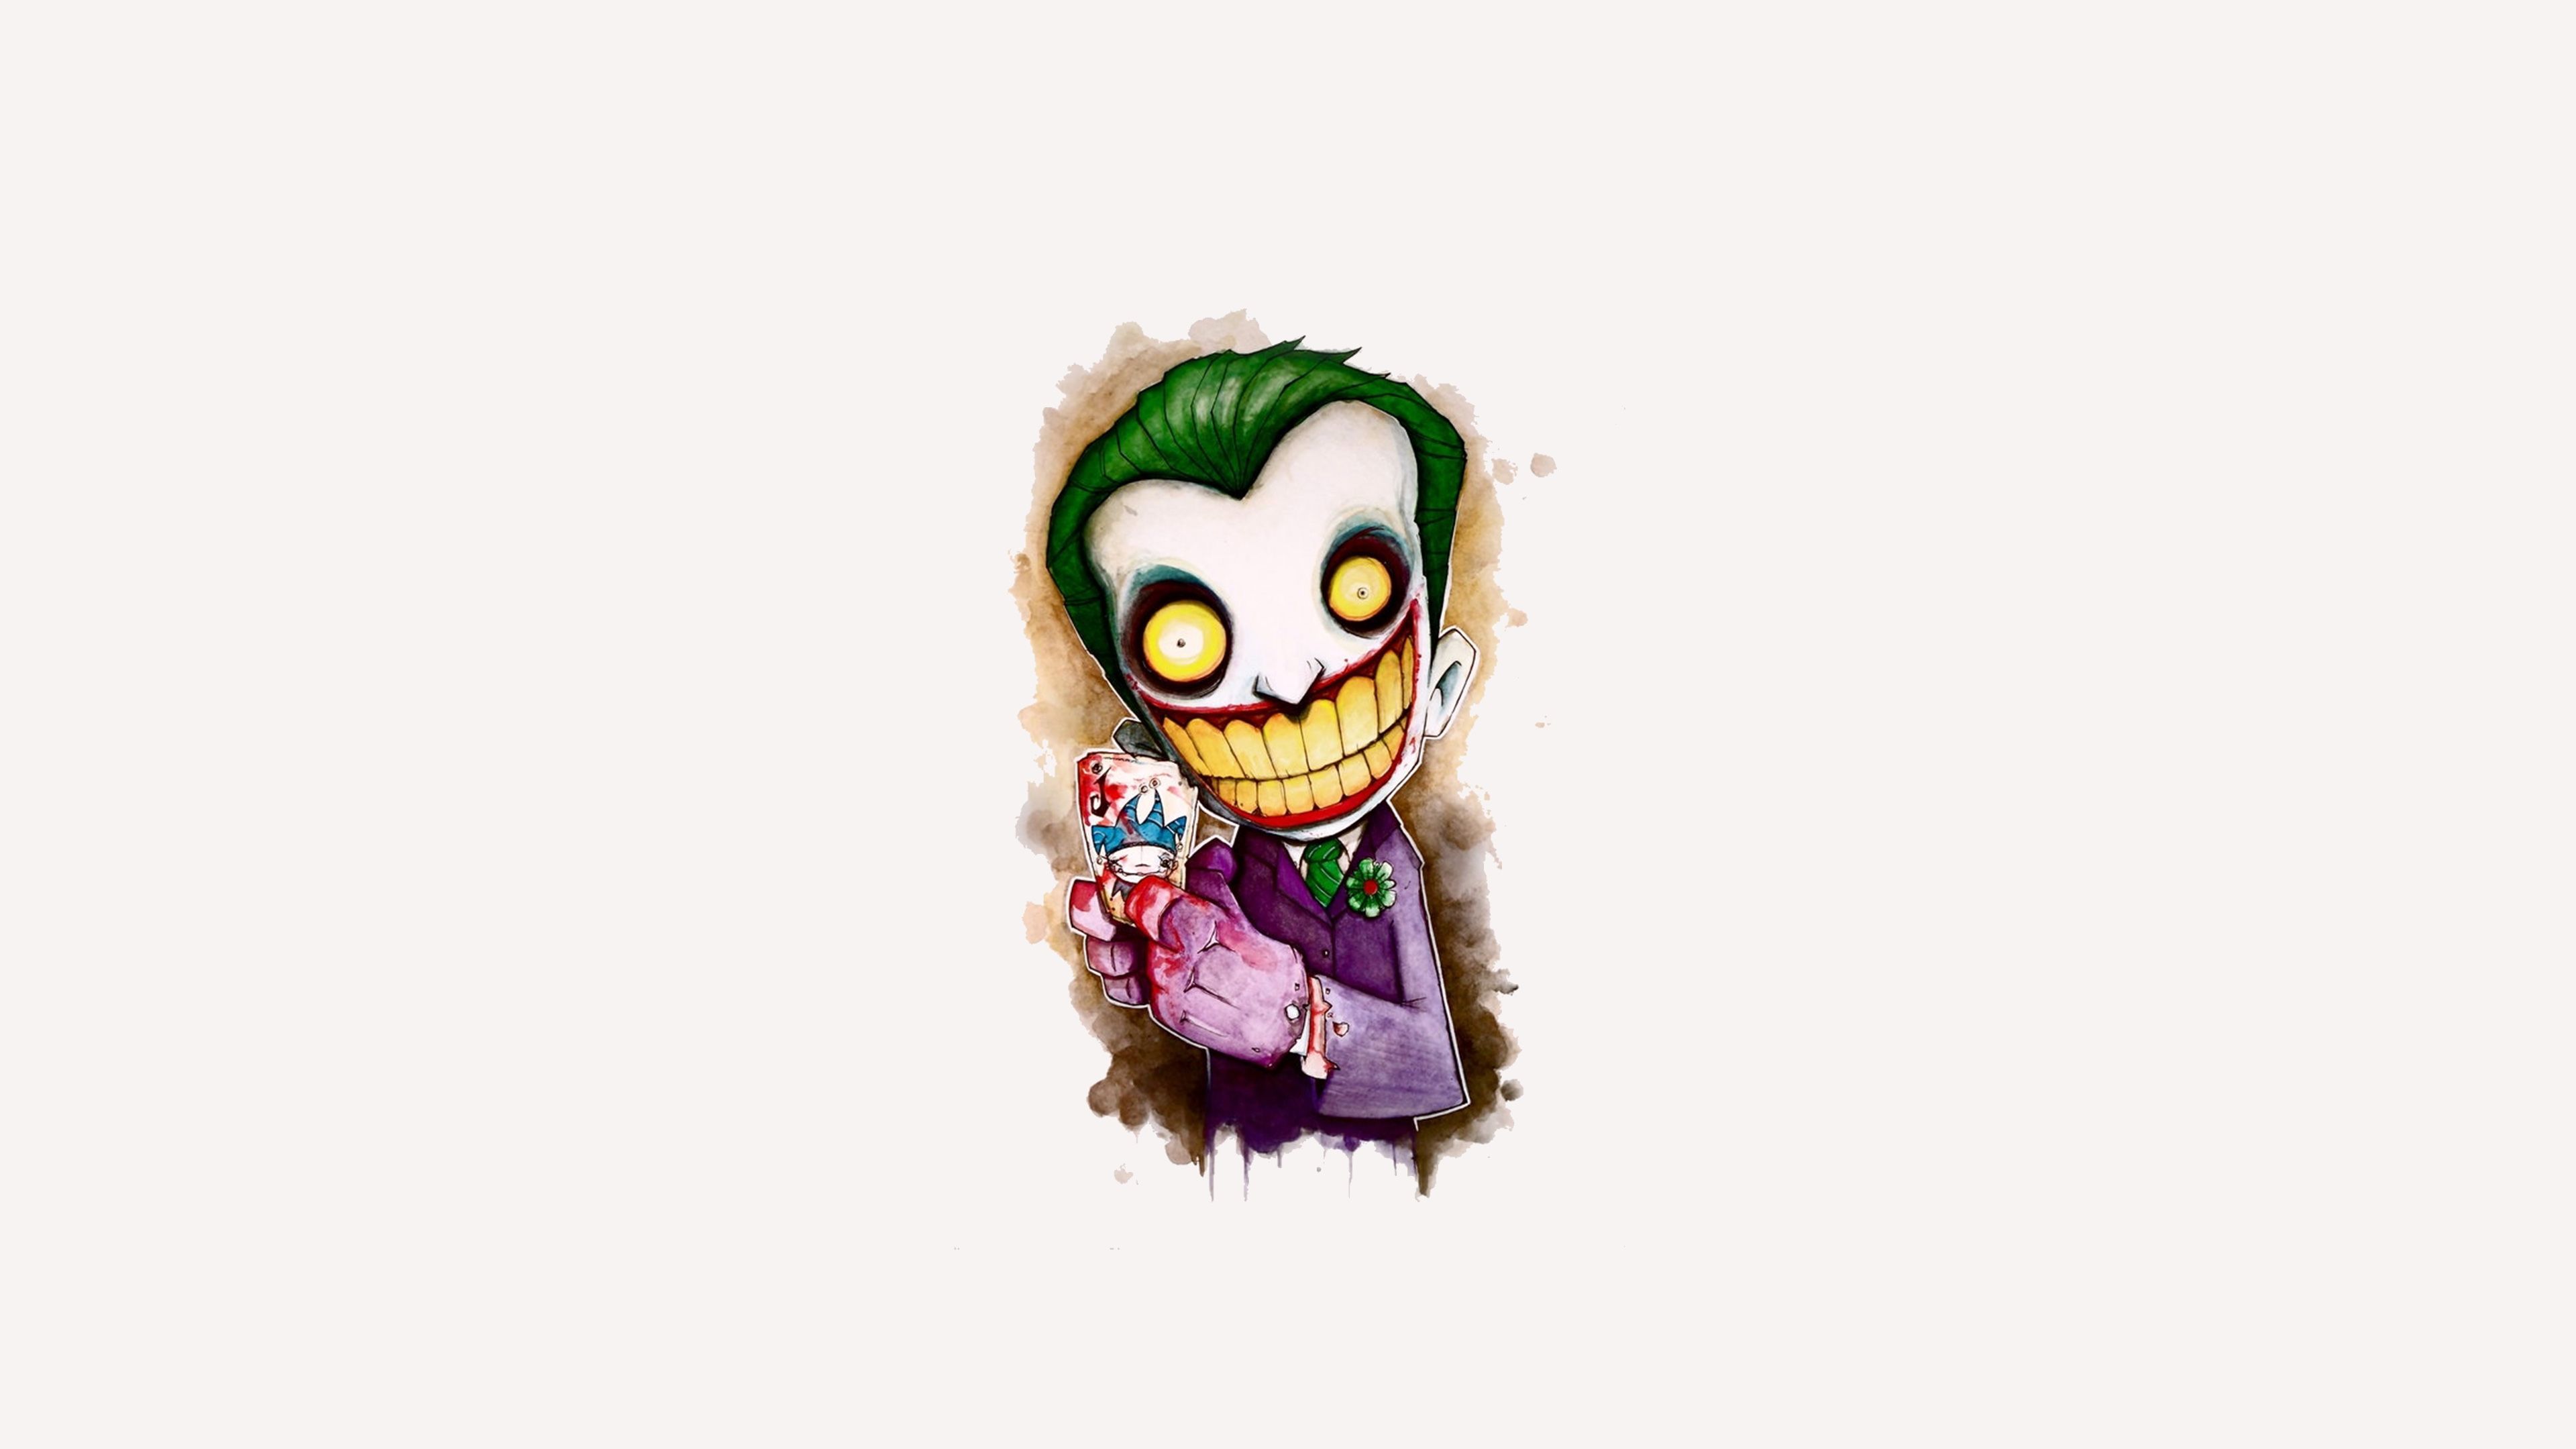 Joker Cartoon 4k Artwork, Hd Artist, 4k Wallpapers, - Joker Cute -  3840x2160 Wallpaper 